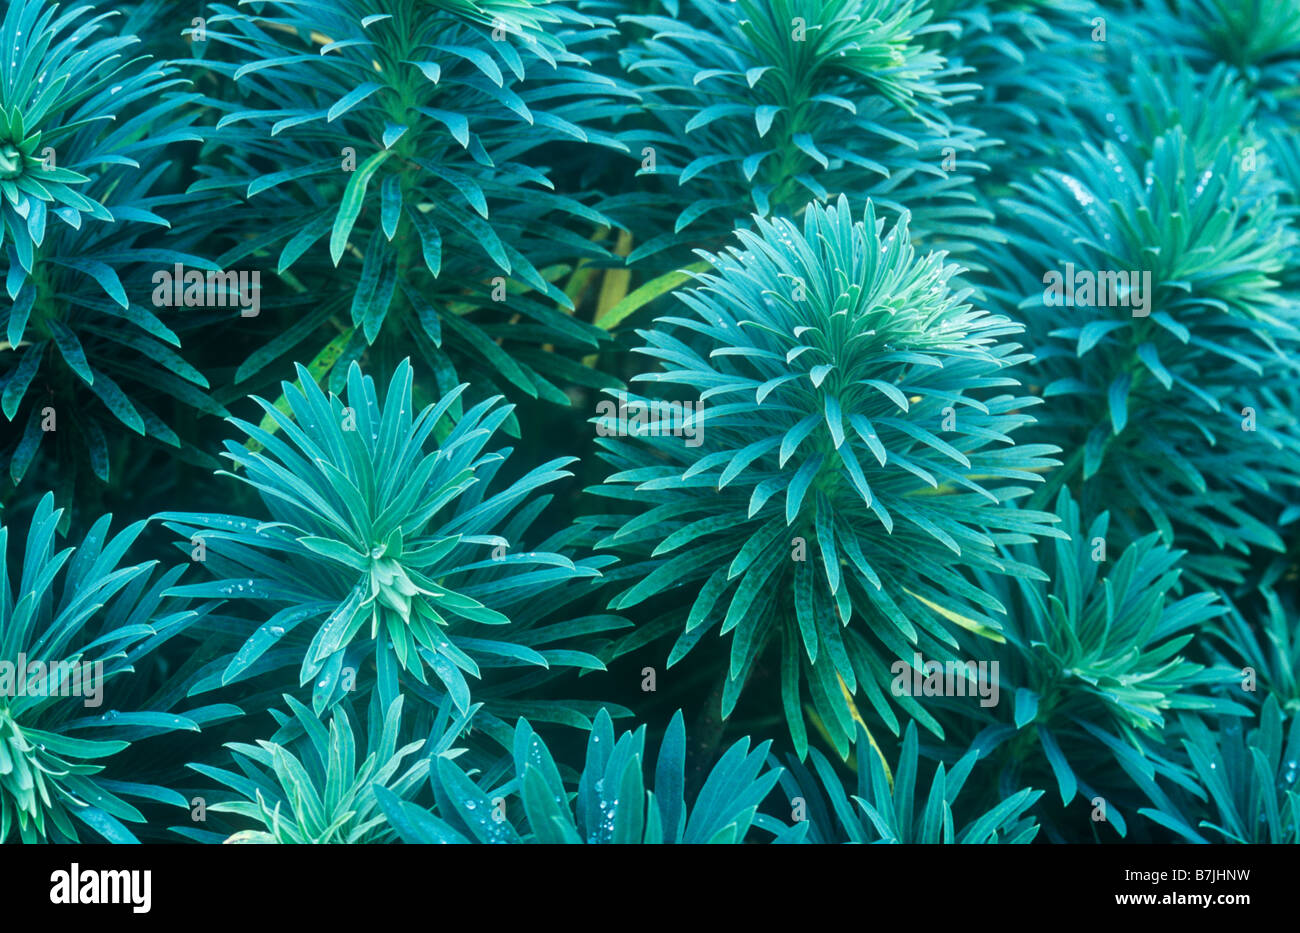 Nahaufnahme von Staats-und dicht gruppierten nadelförmige blaugrüne Blätter der Grenze mehrjährige Pflanze Wolfsmilch oder Euphorbia characias Stockfoto